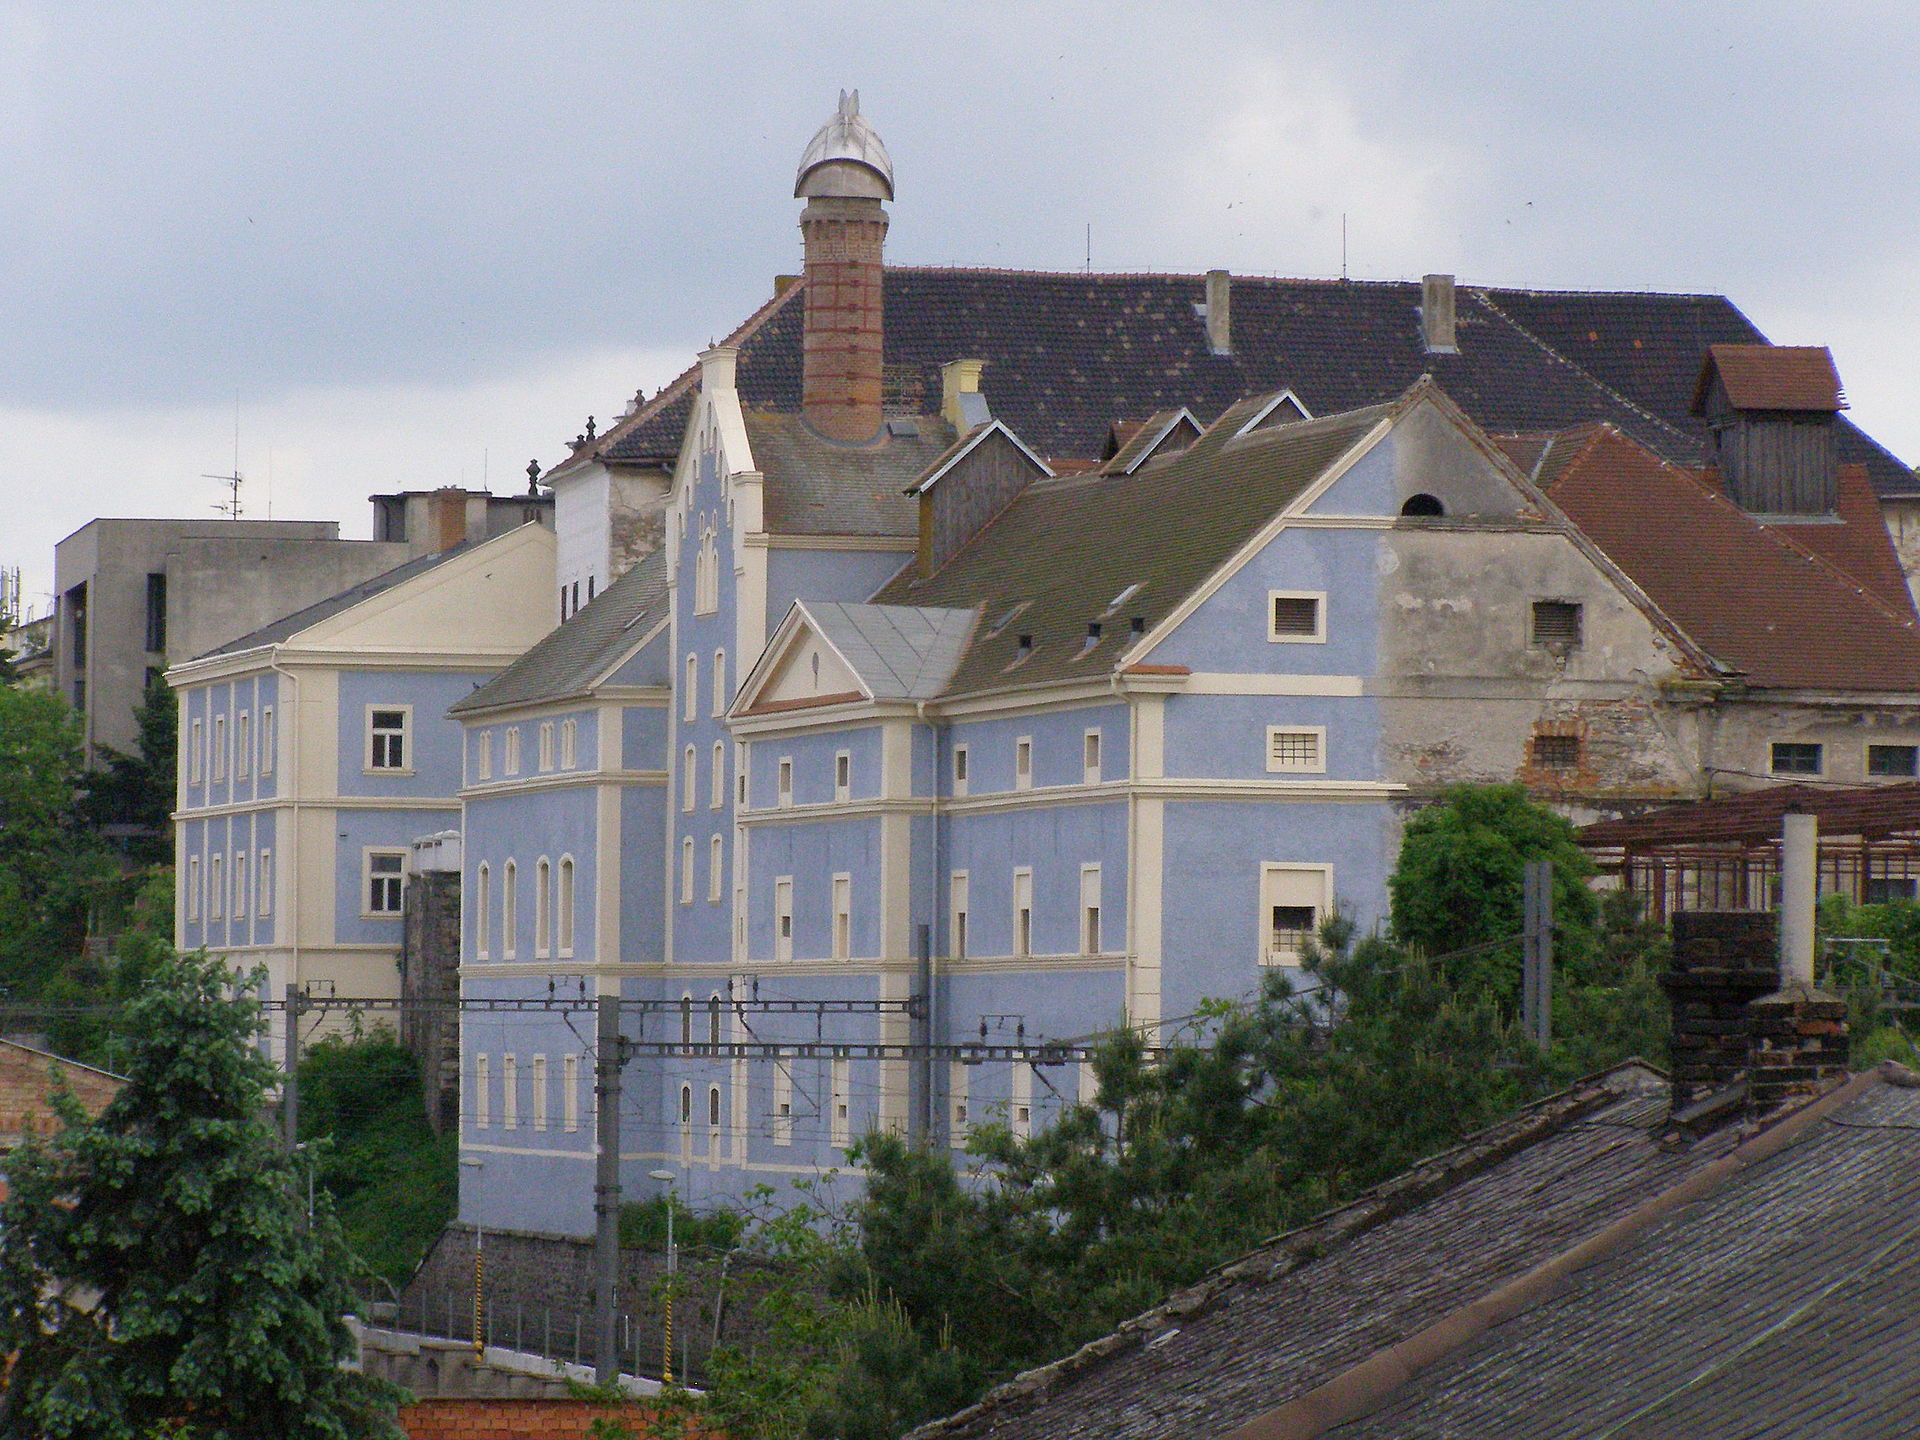 Abbildung eines Potemkinschen Dorfs - hier als Fassadenanstrich der Vorderseite eines ansonsten baufälligen Gebäudes